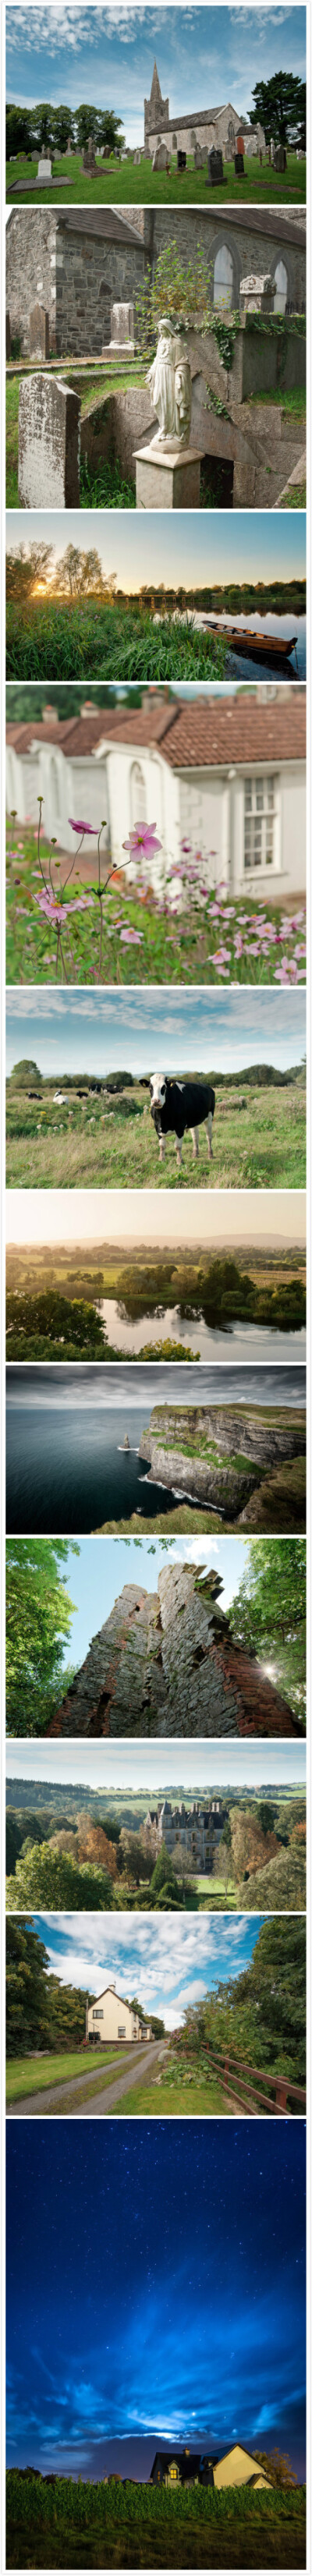 【爱尔兰风光】这座翡翠岛国，自然美景摄人心魄。